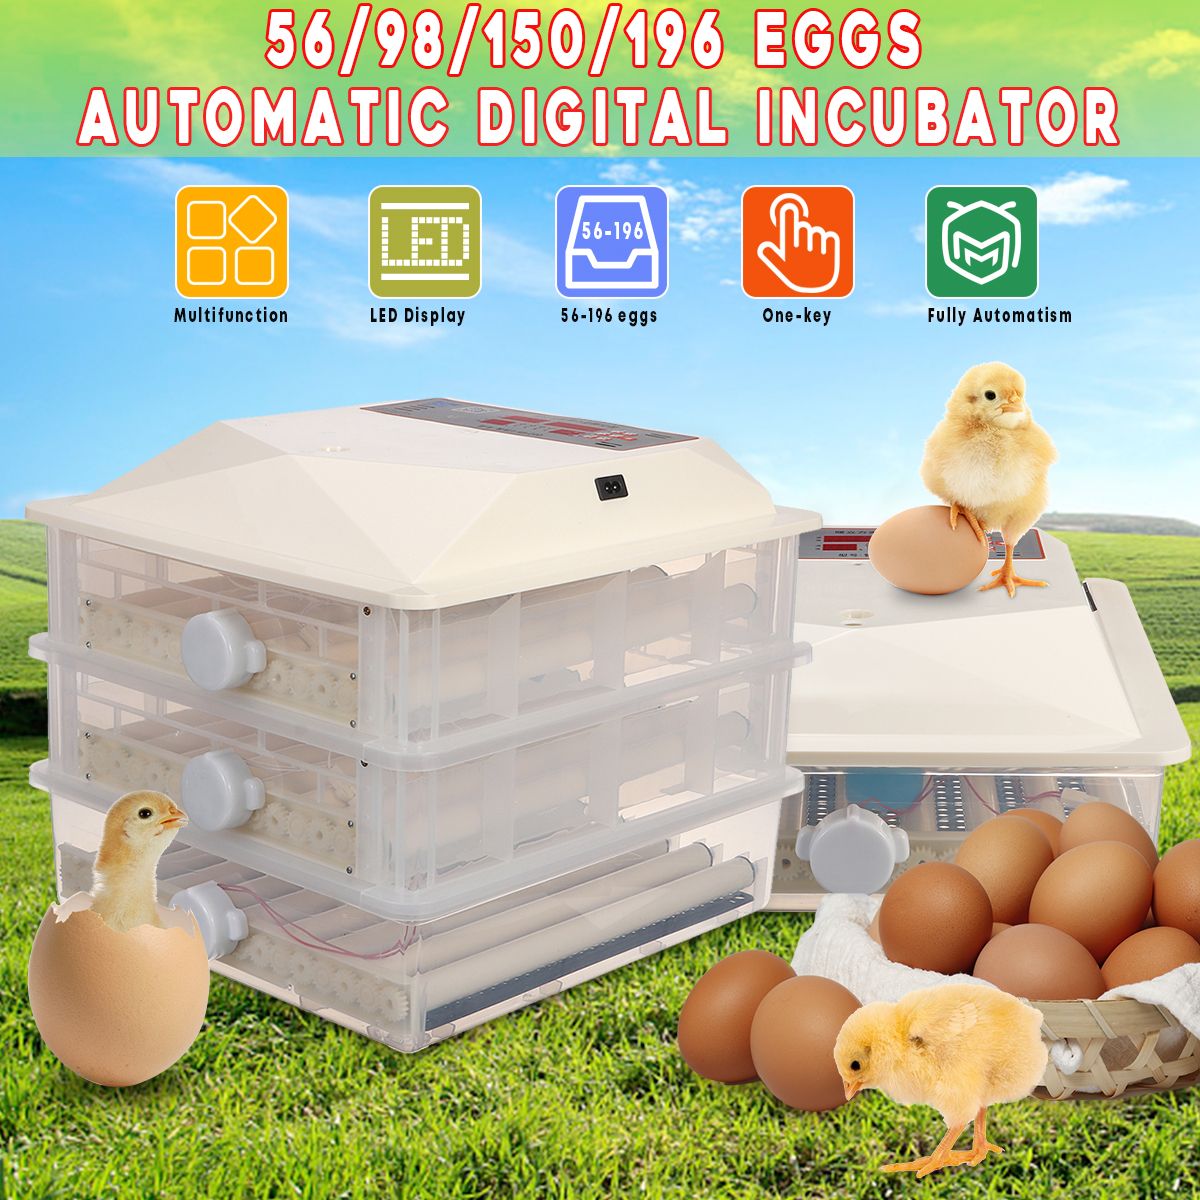 110V-5698150196-Eggs-Fully-Automatic-Egg-Incubator-Hatcher-Auto-Turning-Machine-1547864